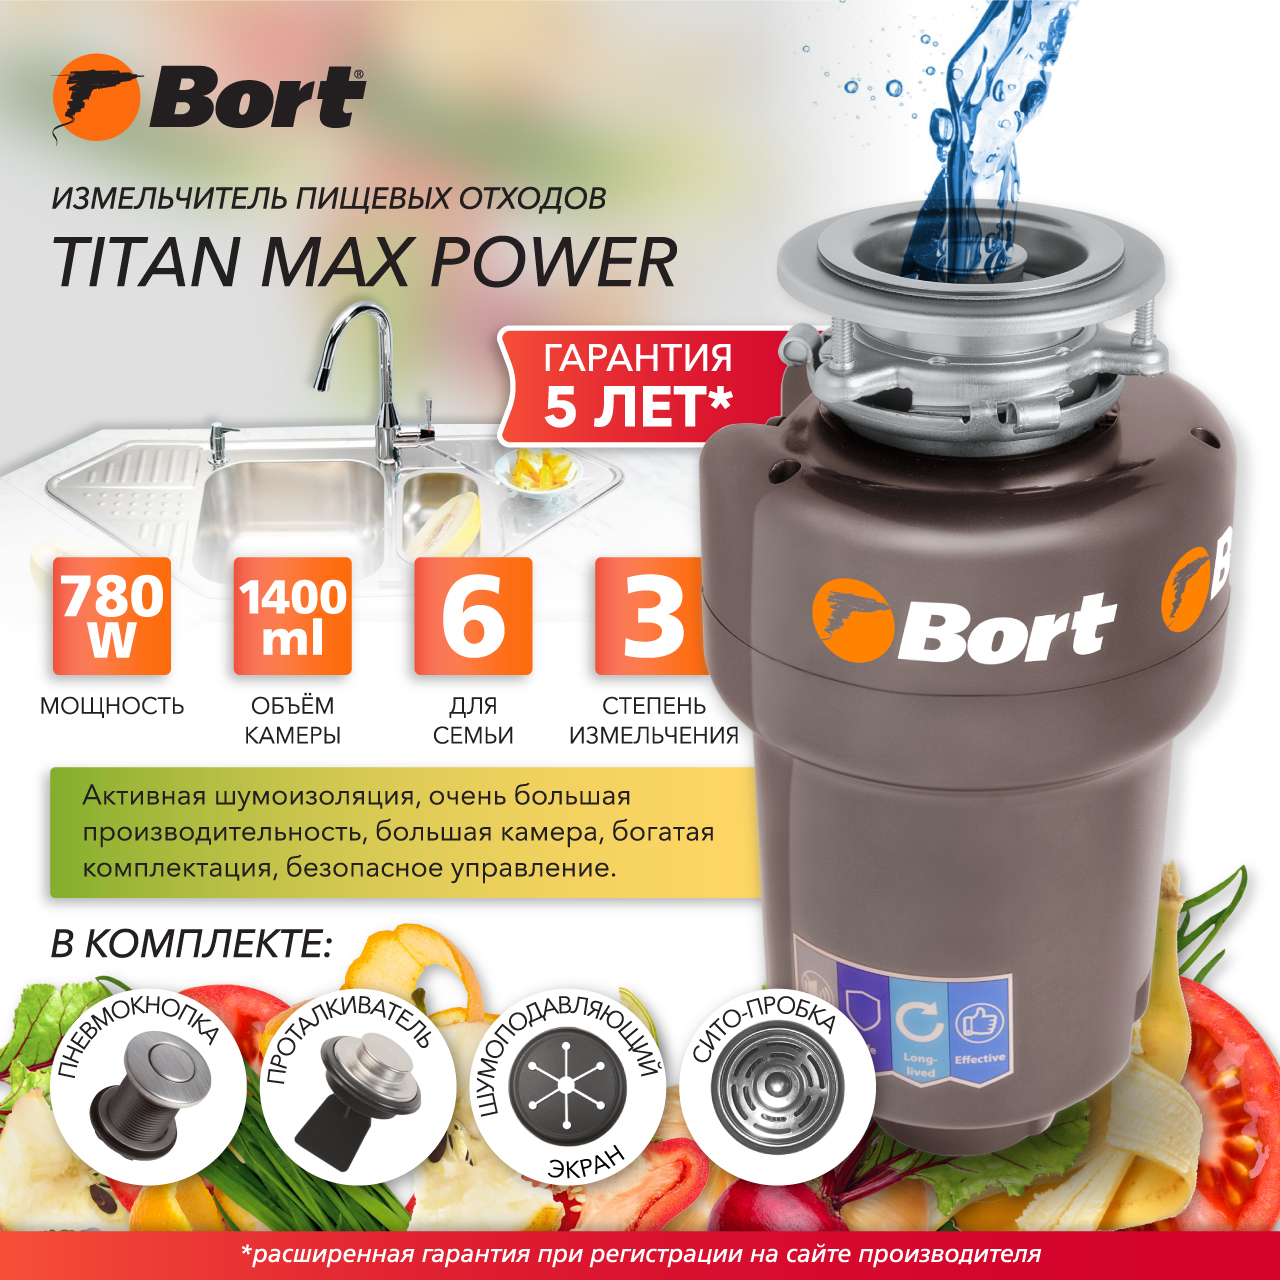 Измельчитель пищевых отходов Bort TITAN MAX POWER (91275790) серебристый